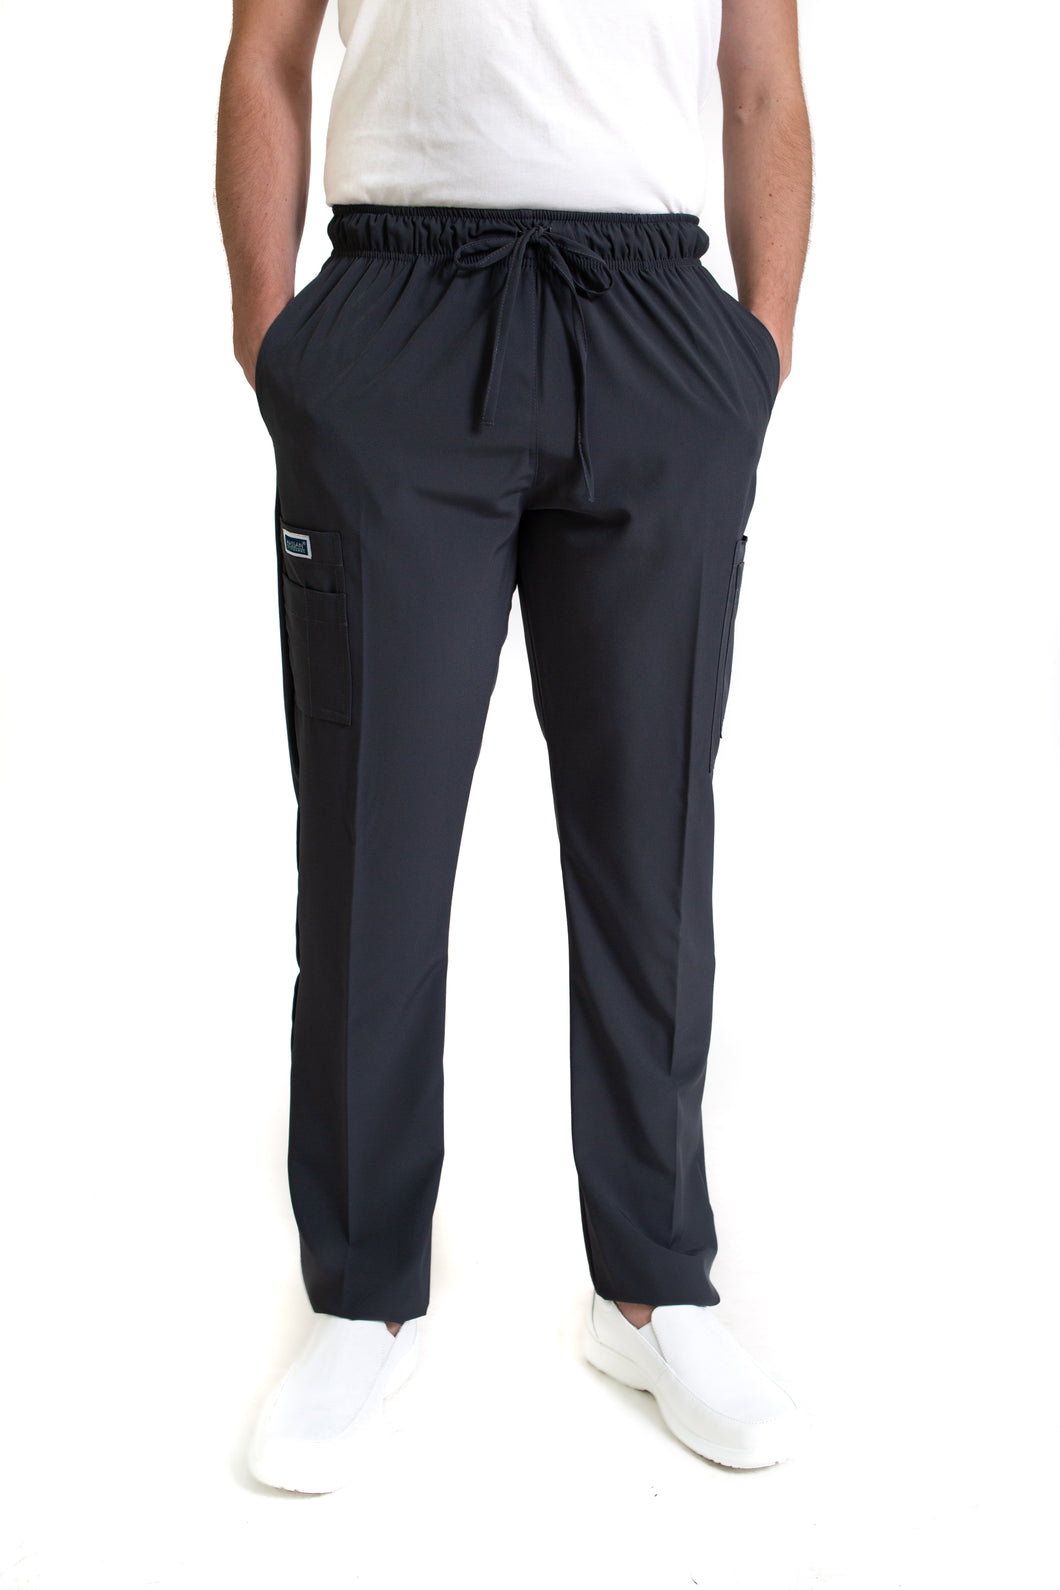 Pantalón Pant EA-02P REPELENTE A FLUIDOS-Color PEWTER HOMBRE-HASSAN Uniformes